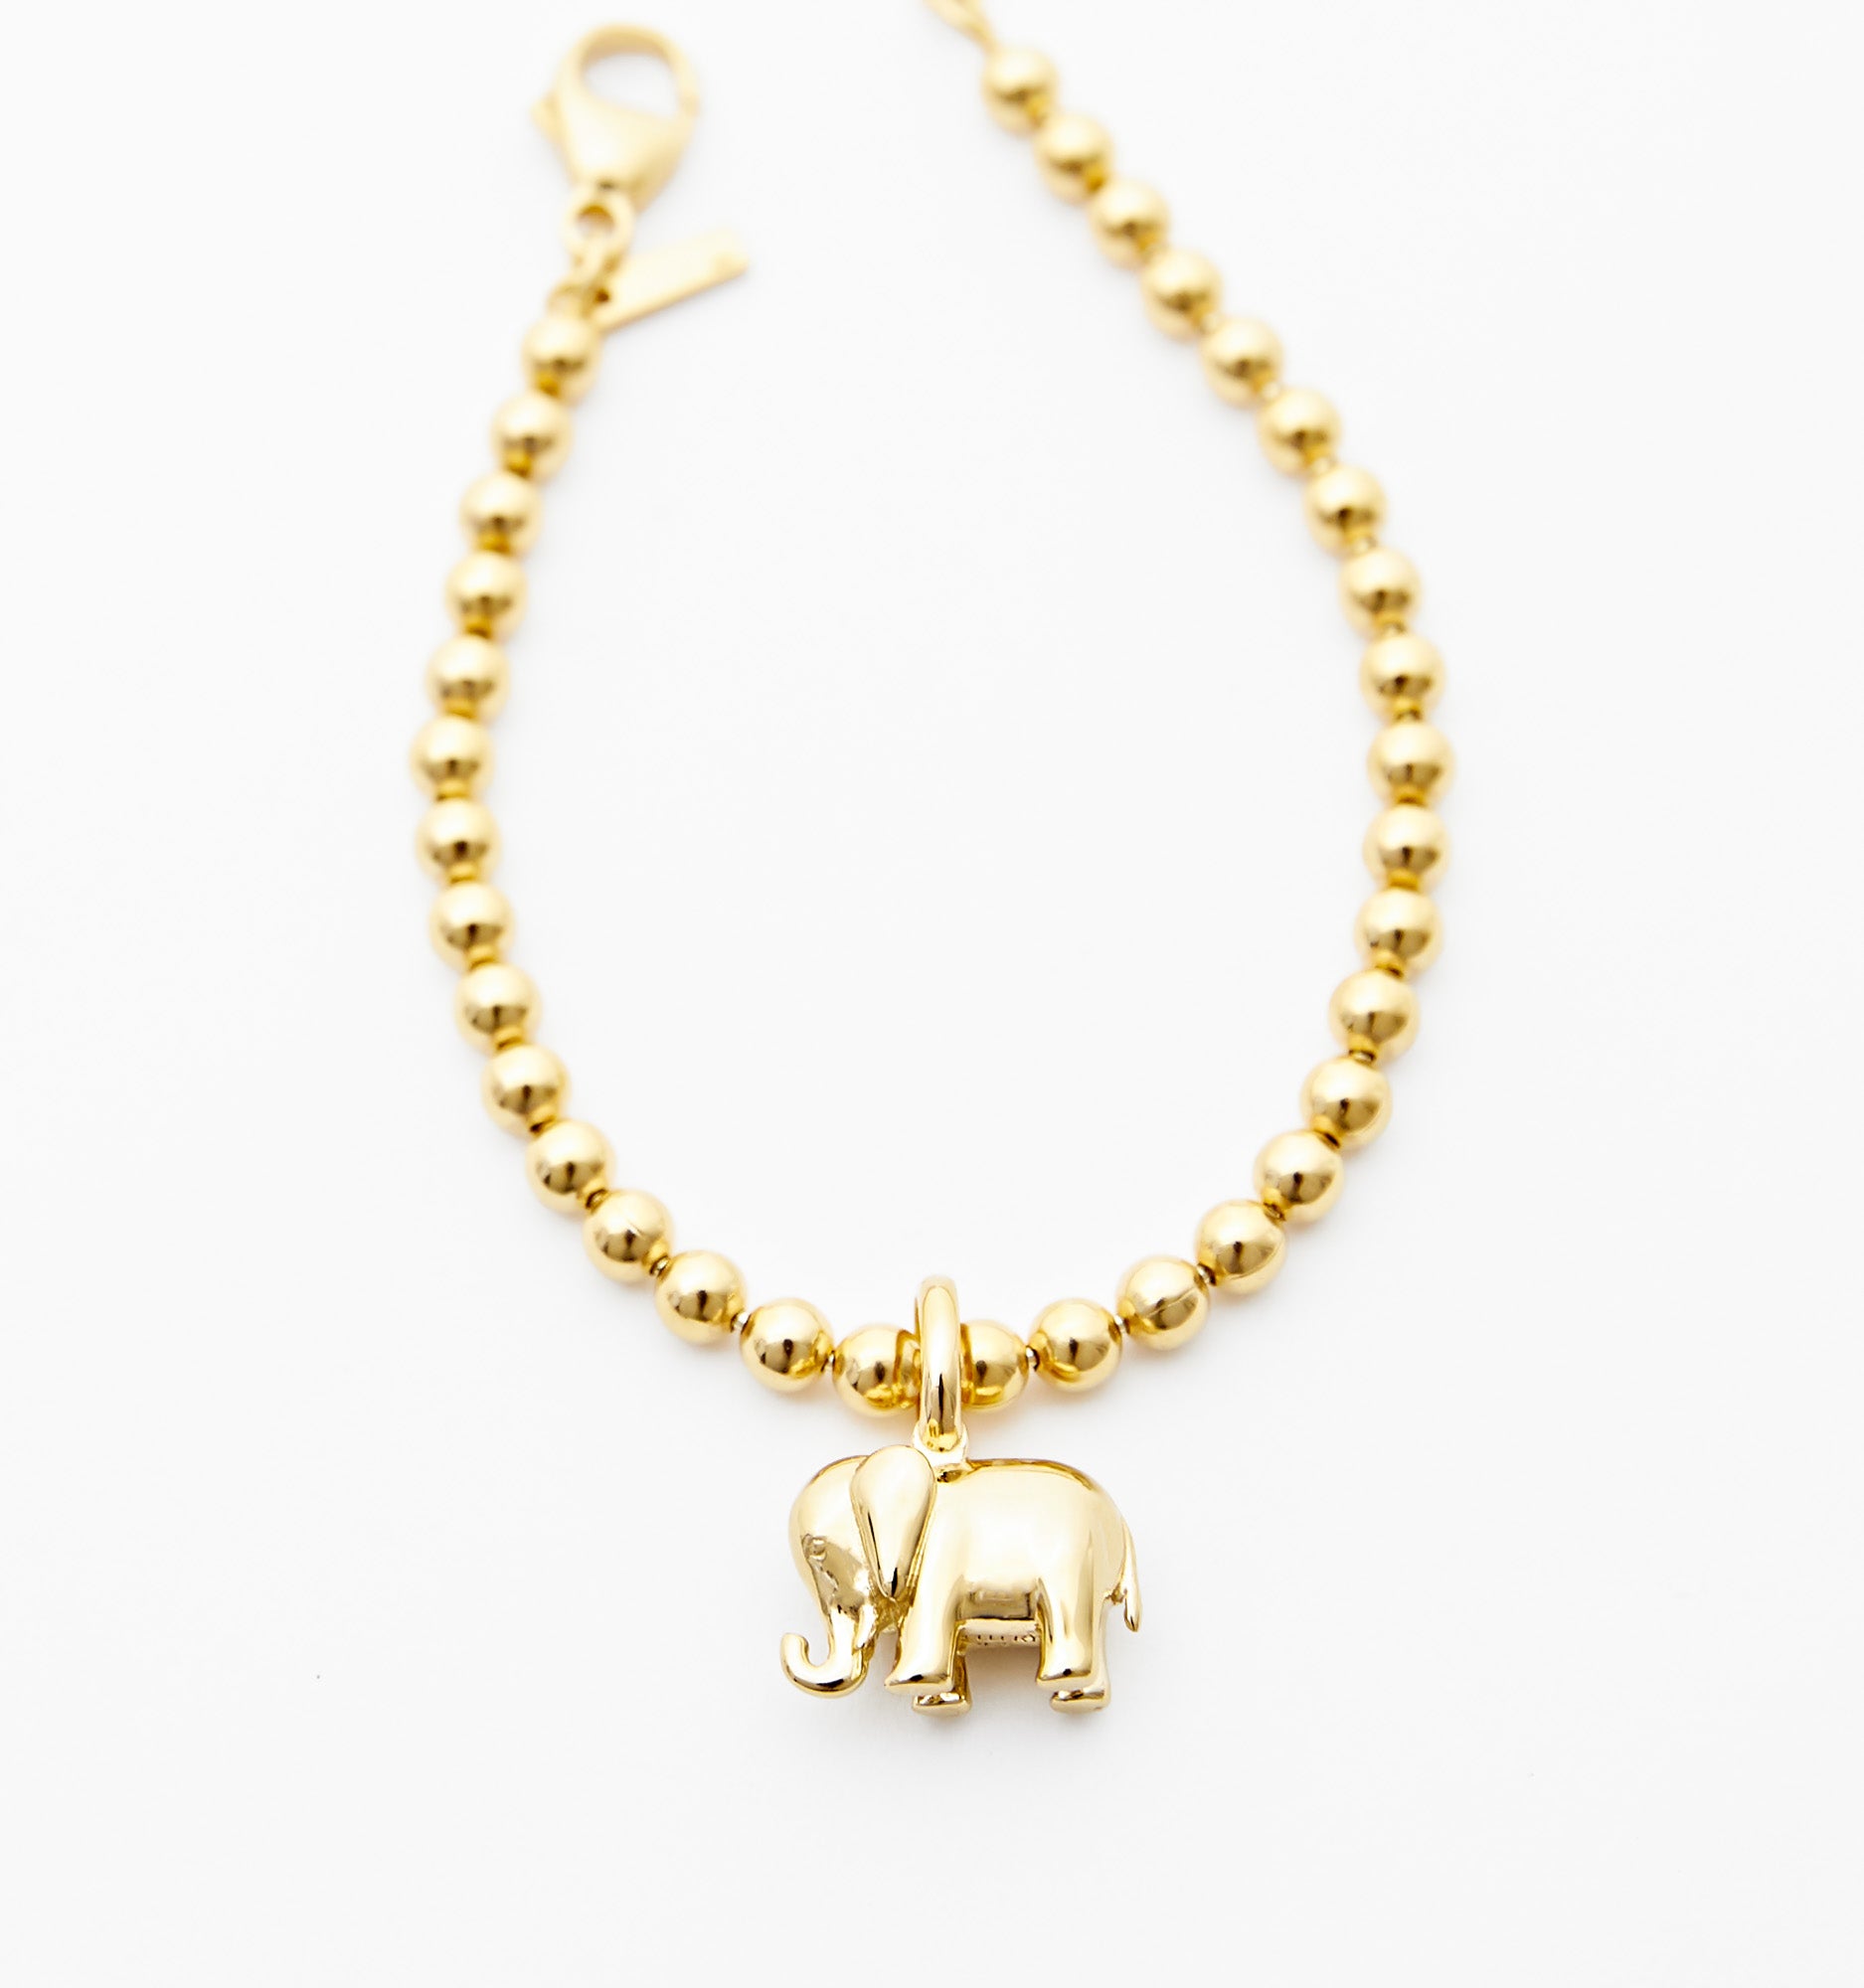 Buy Elephant Bangle, Elephant Charm Bracelet, Expandable Bangle, Charm  Bangle, Personalized Bracelet, Initial Bracelet, Monogram Online in India -  Etsy